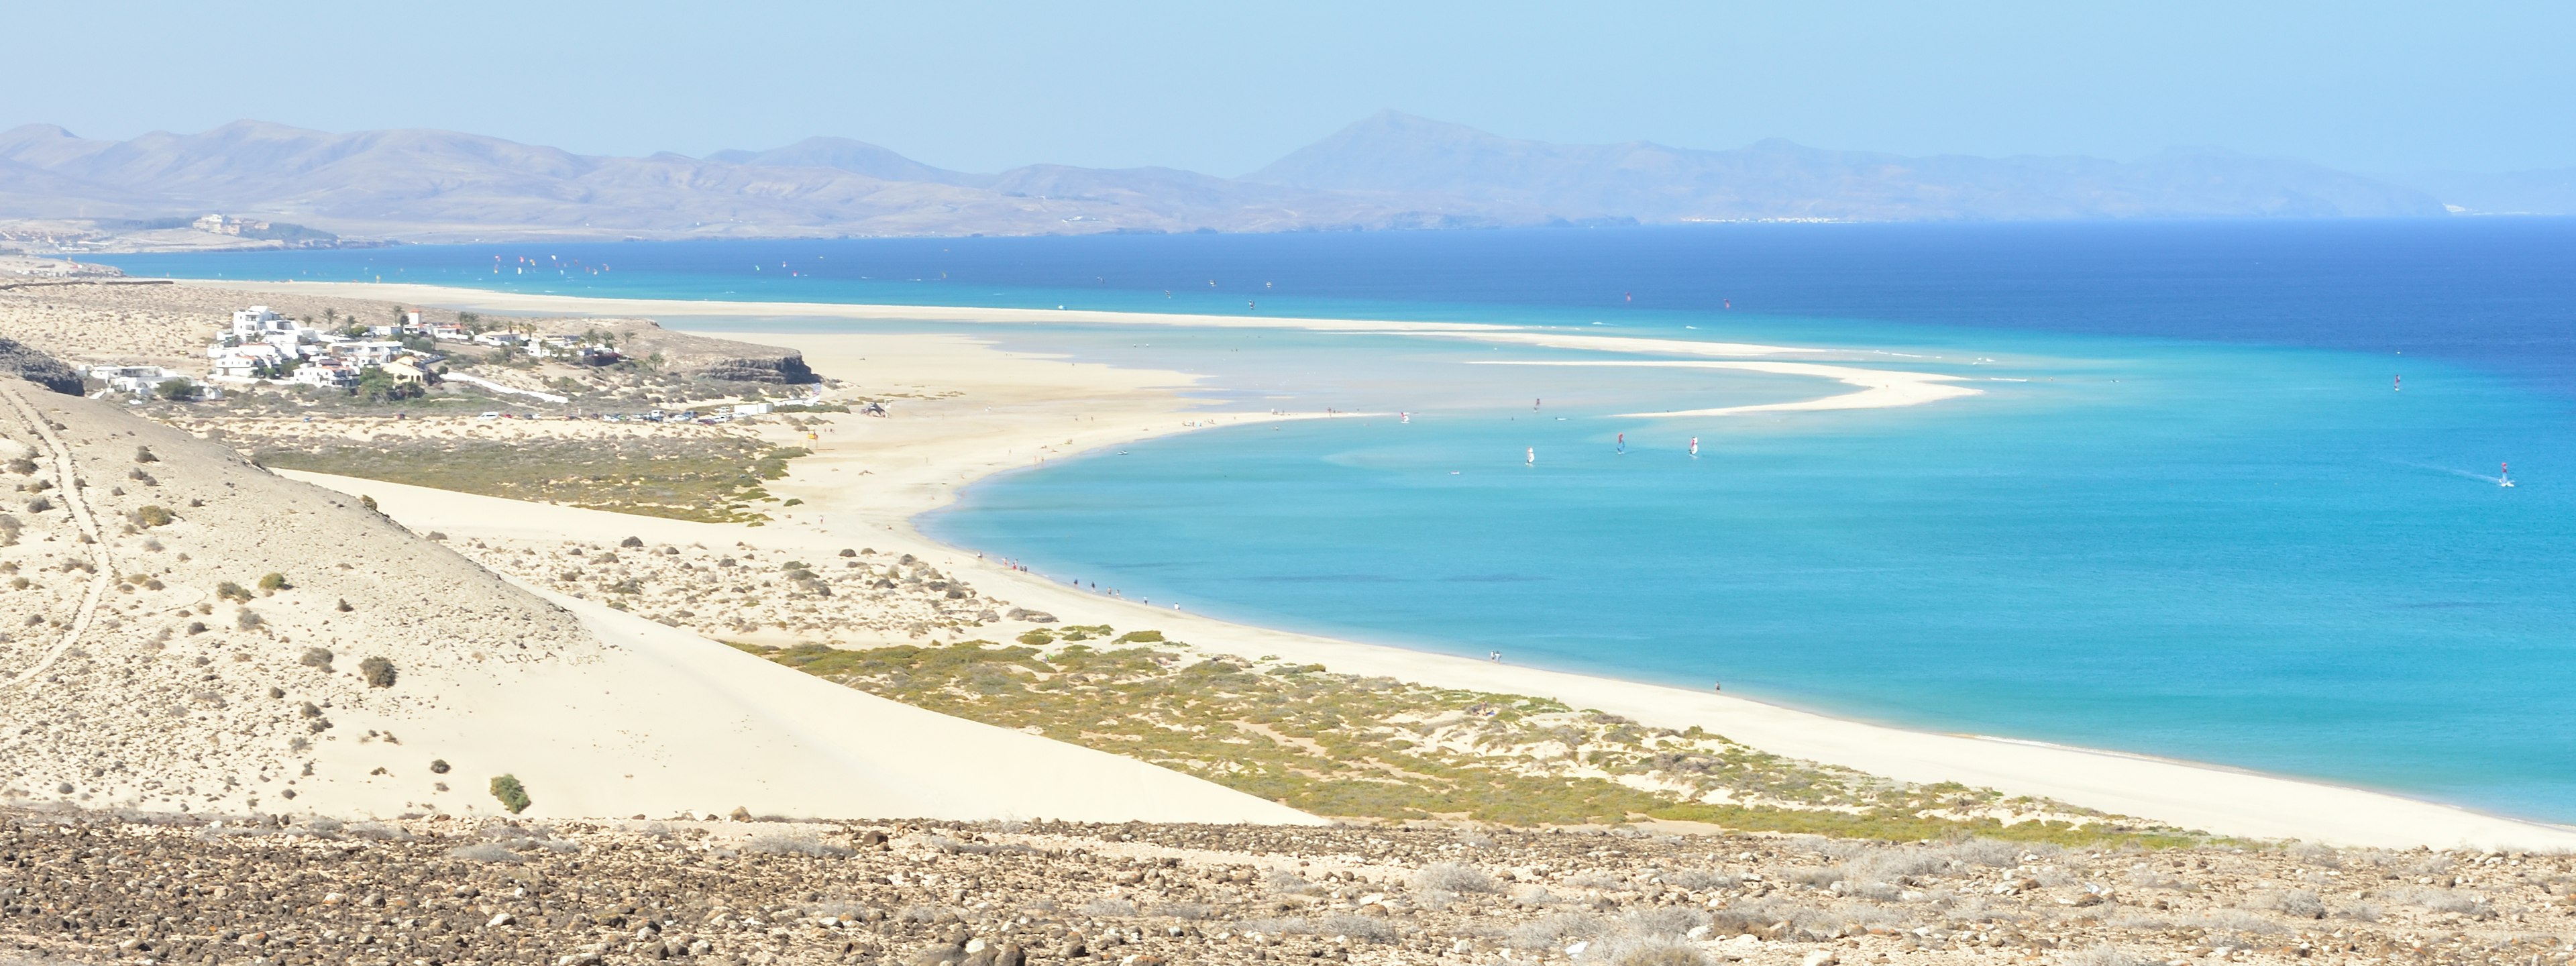 la spiaggia di sotavento a fuerteventura, una delle più belle del mondo